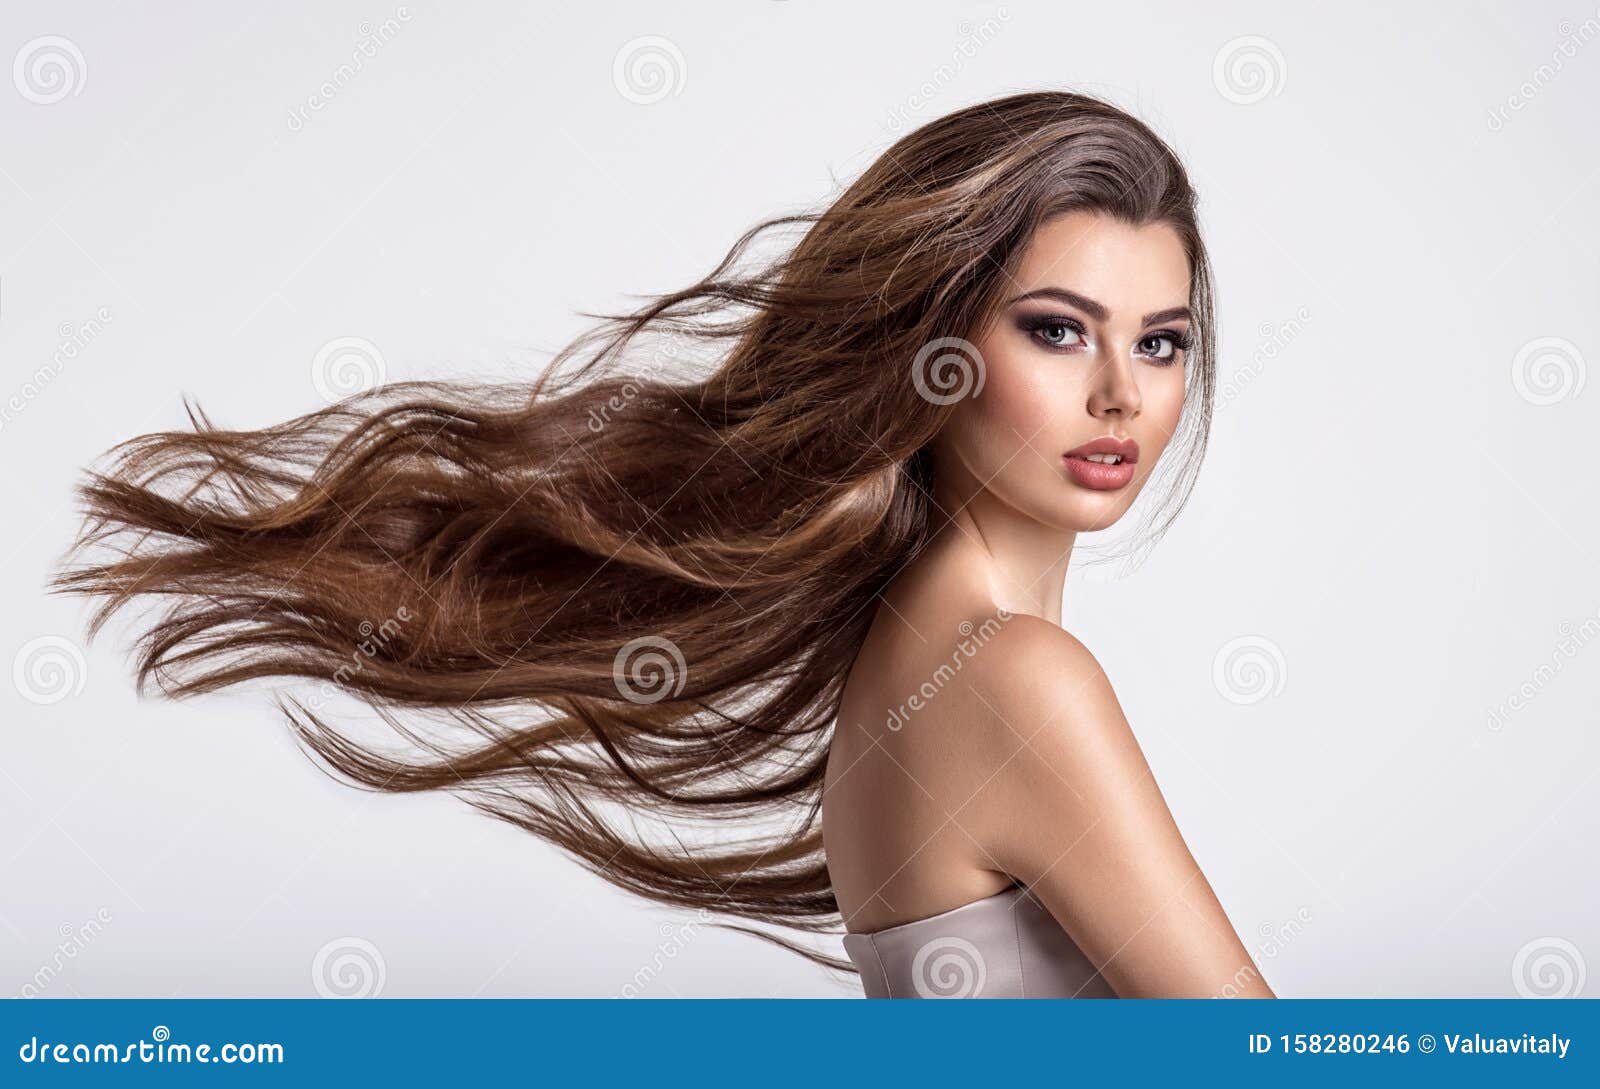 Фото Женщины Брюнетки С Длинными Волосами